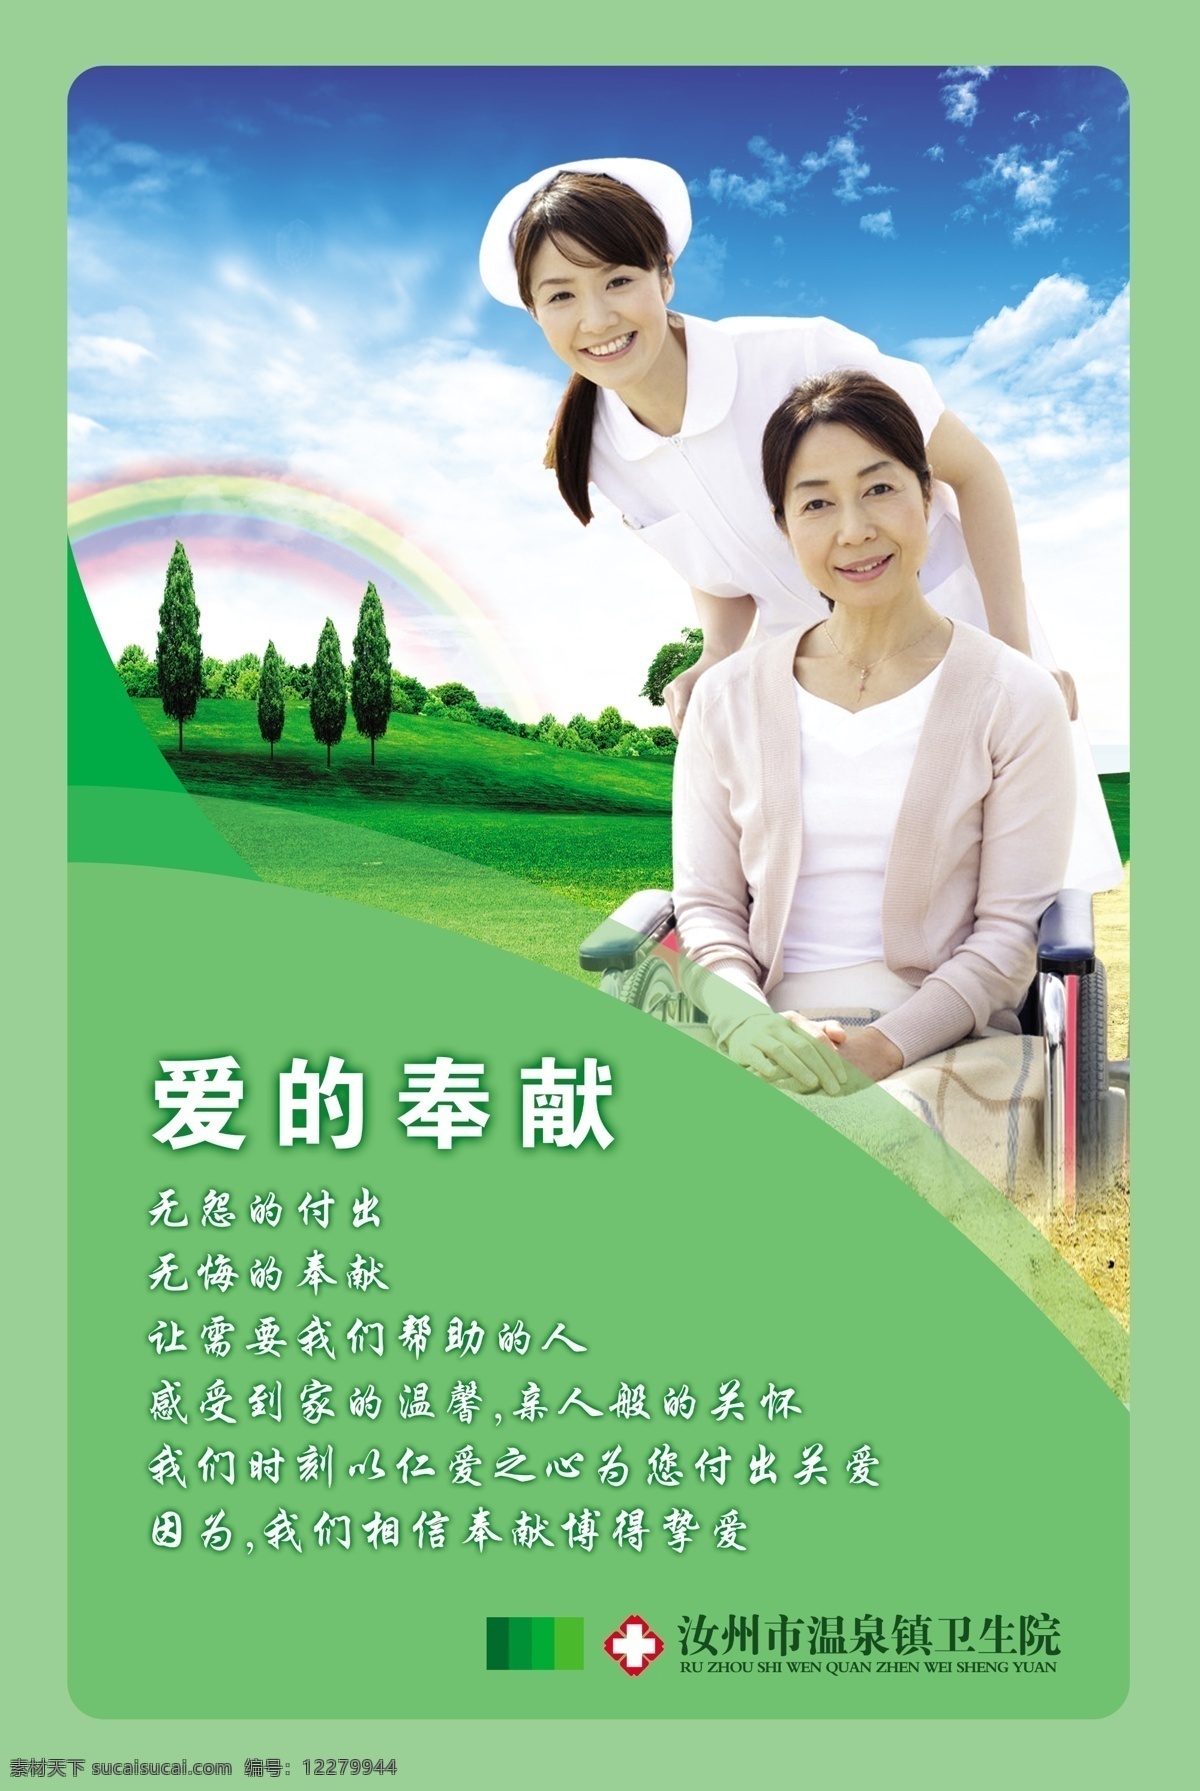 医院标语海报 医院 卫生院 护士与病人 背景 绿色 爱的奉献 标语 制度框 海报 分层 源文件